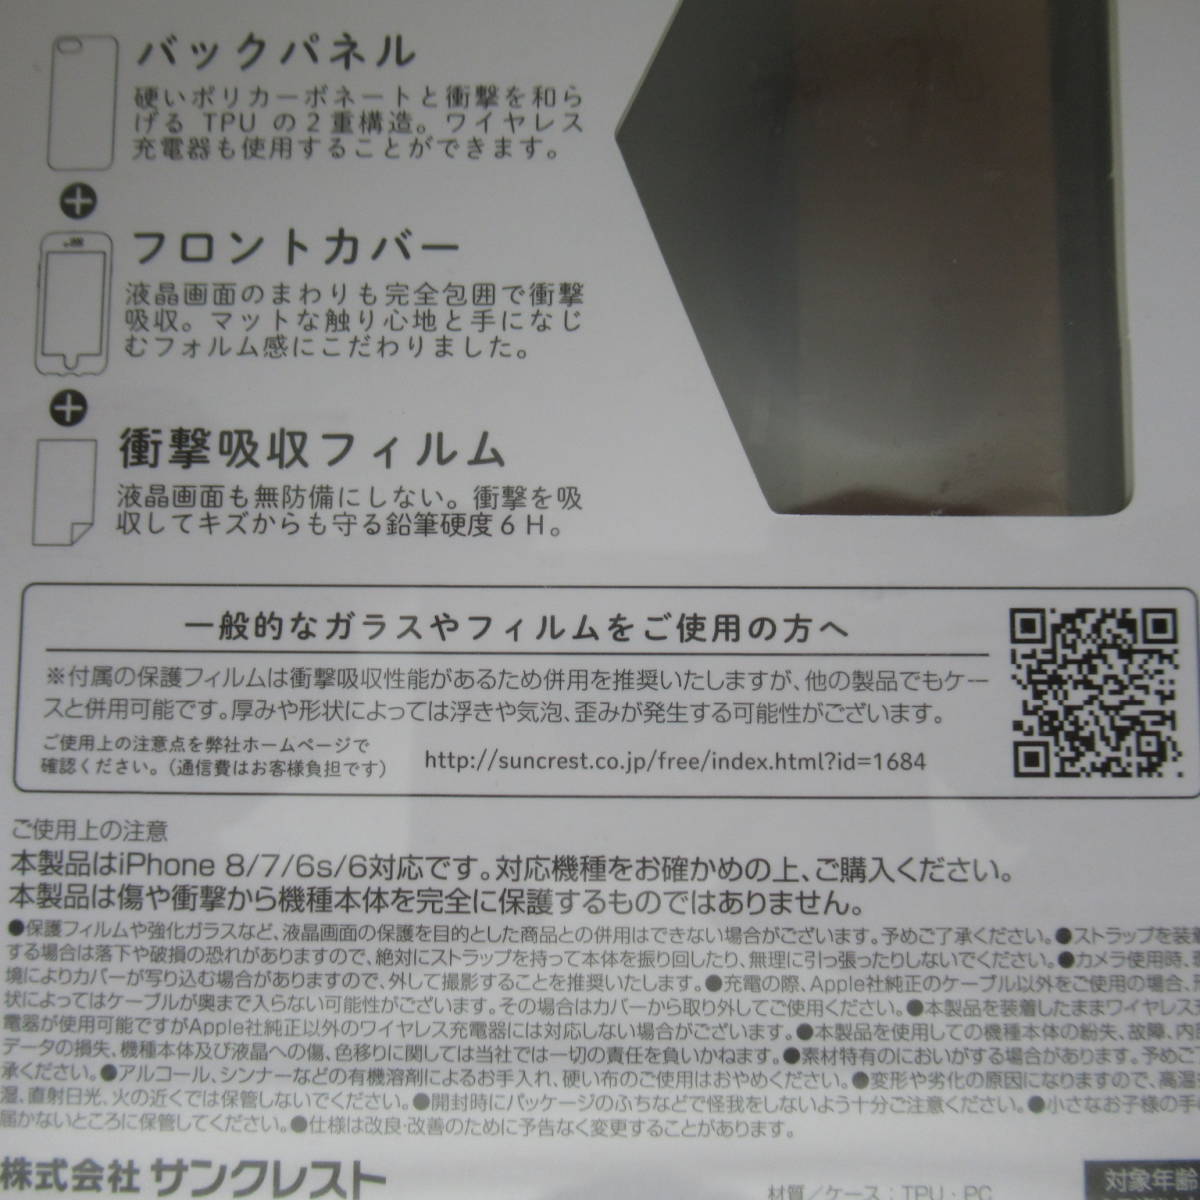 【未使用品】 iphone 携帯カバー 保護フィルム ケース フューシャピンク IJOY iPhone SE 第2、3世代 iPhone 8/7/6s/6対応 11_画像4